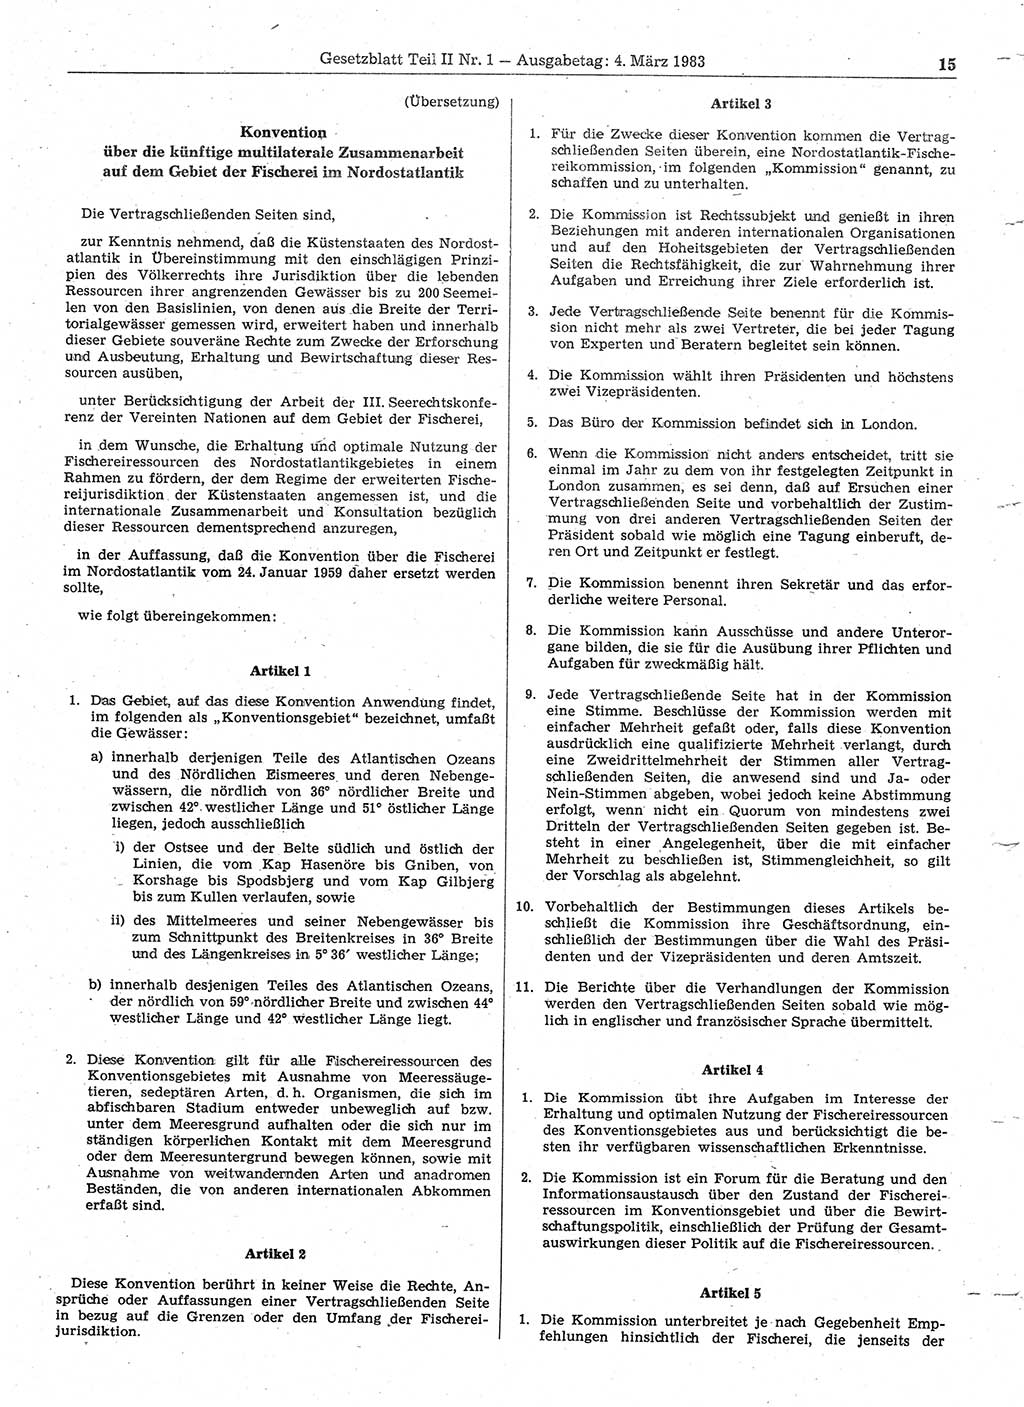 Gesetzblatt (GBl.) der Deutschen Demokratischen Republik (DDR) Teil ⅠⅠ 1983, Seite 15 (GBl. DDR ⅠⅠ 1983, S. 15)